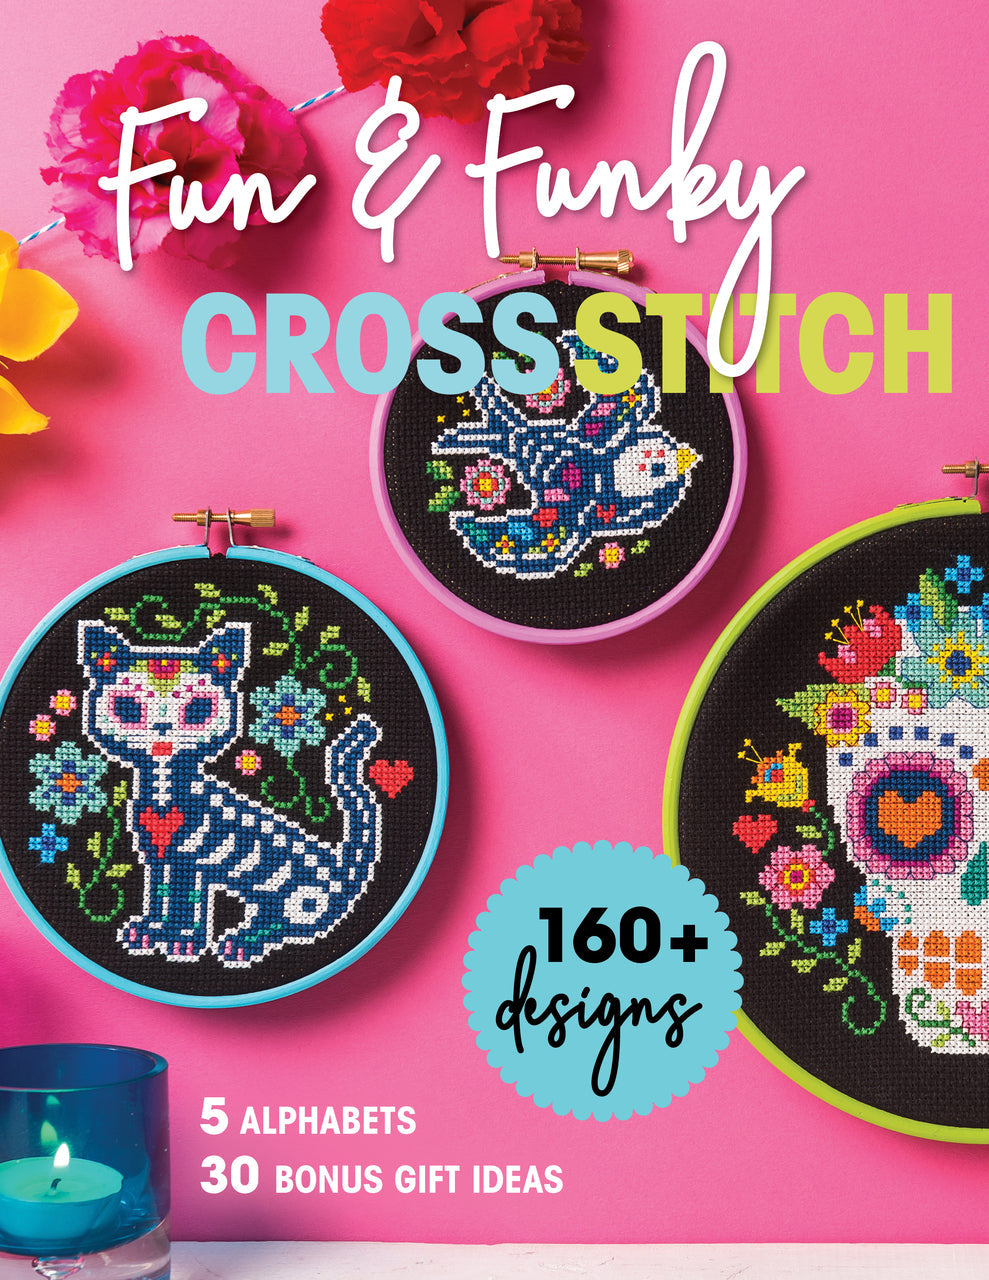 Fun & Funky Cross Stitch" 160 + Designs